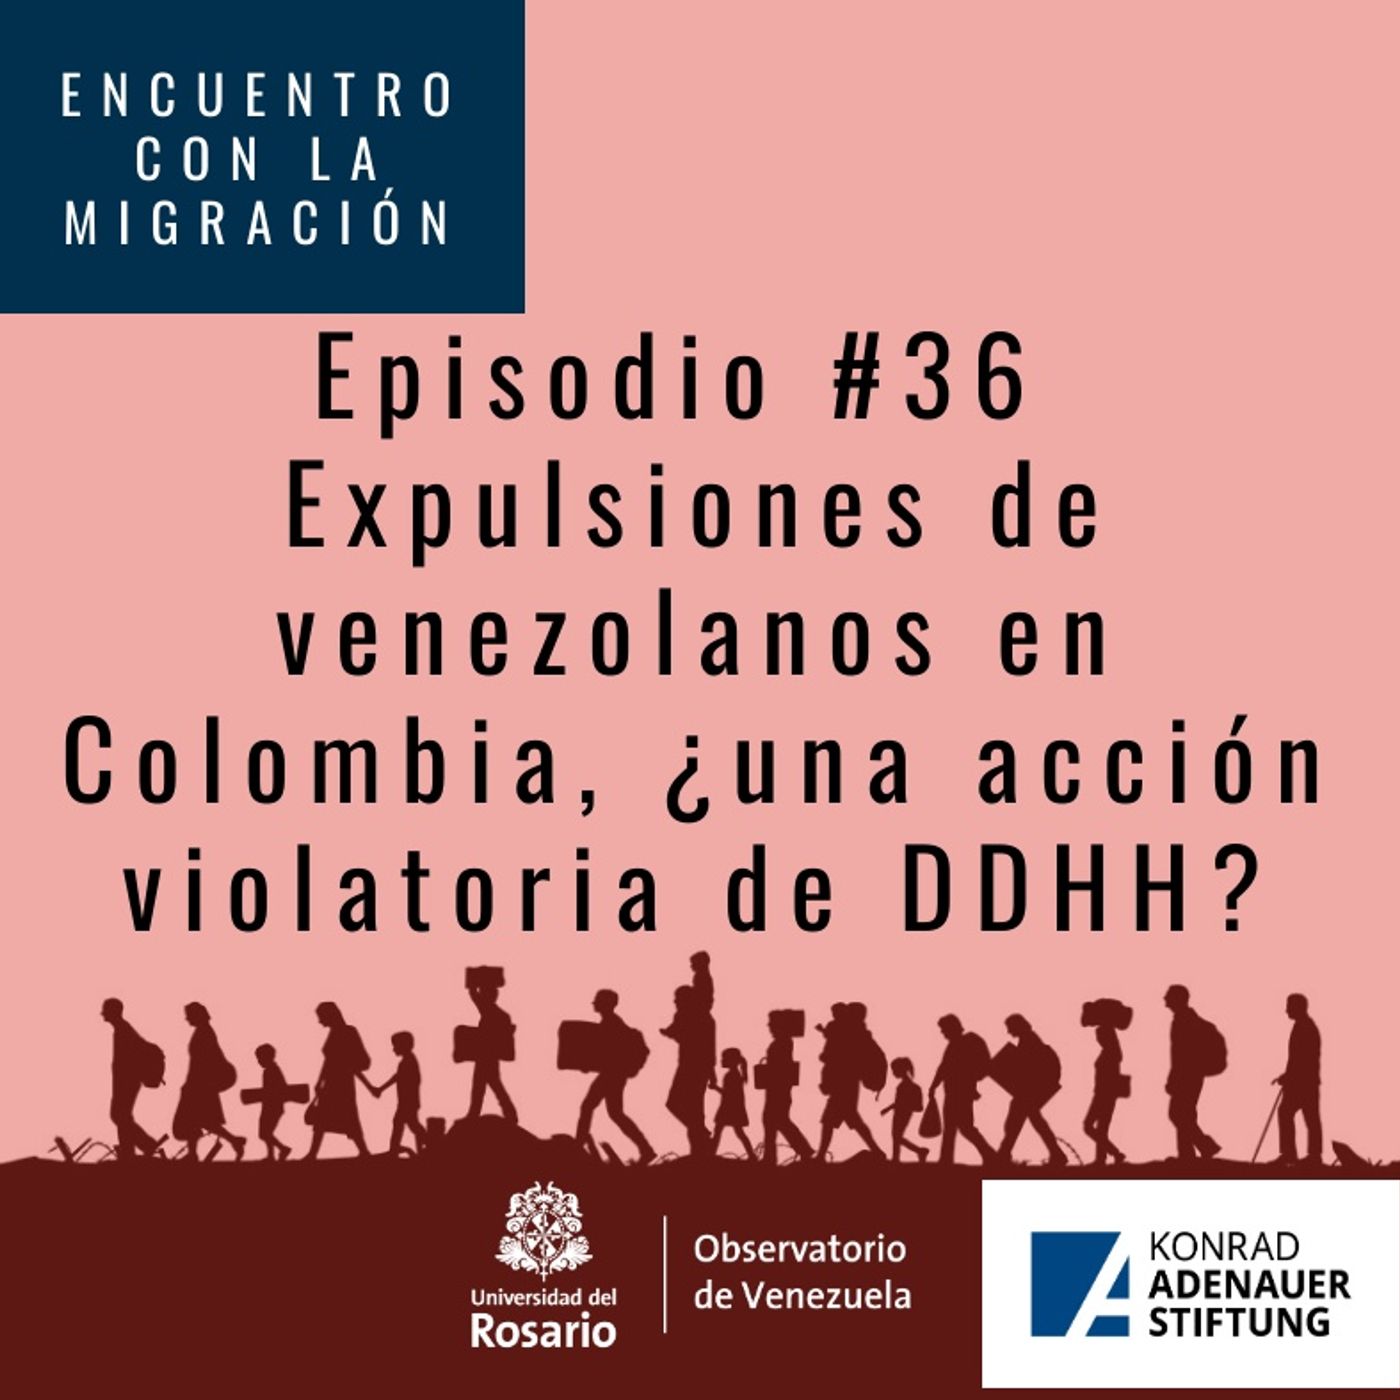 Expulsiones de Venezolanos en Colombia, una acción violatoria de DDHH